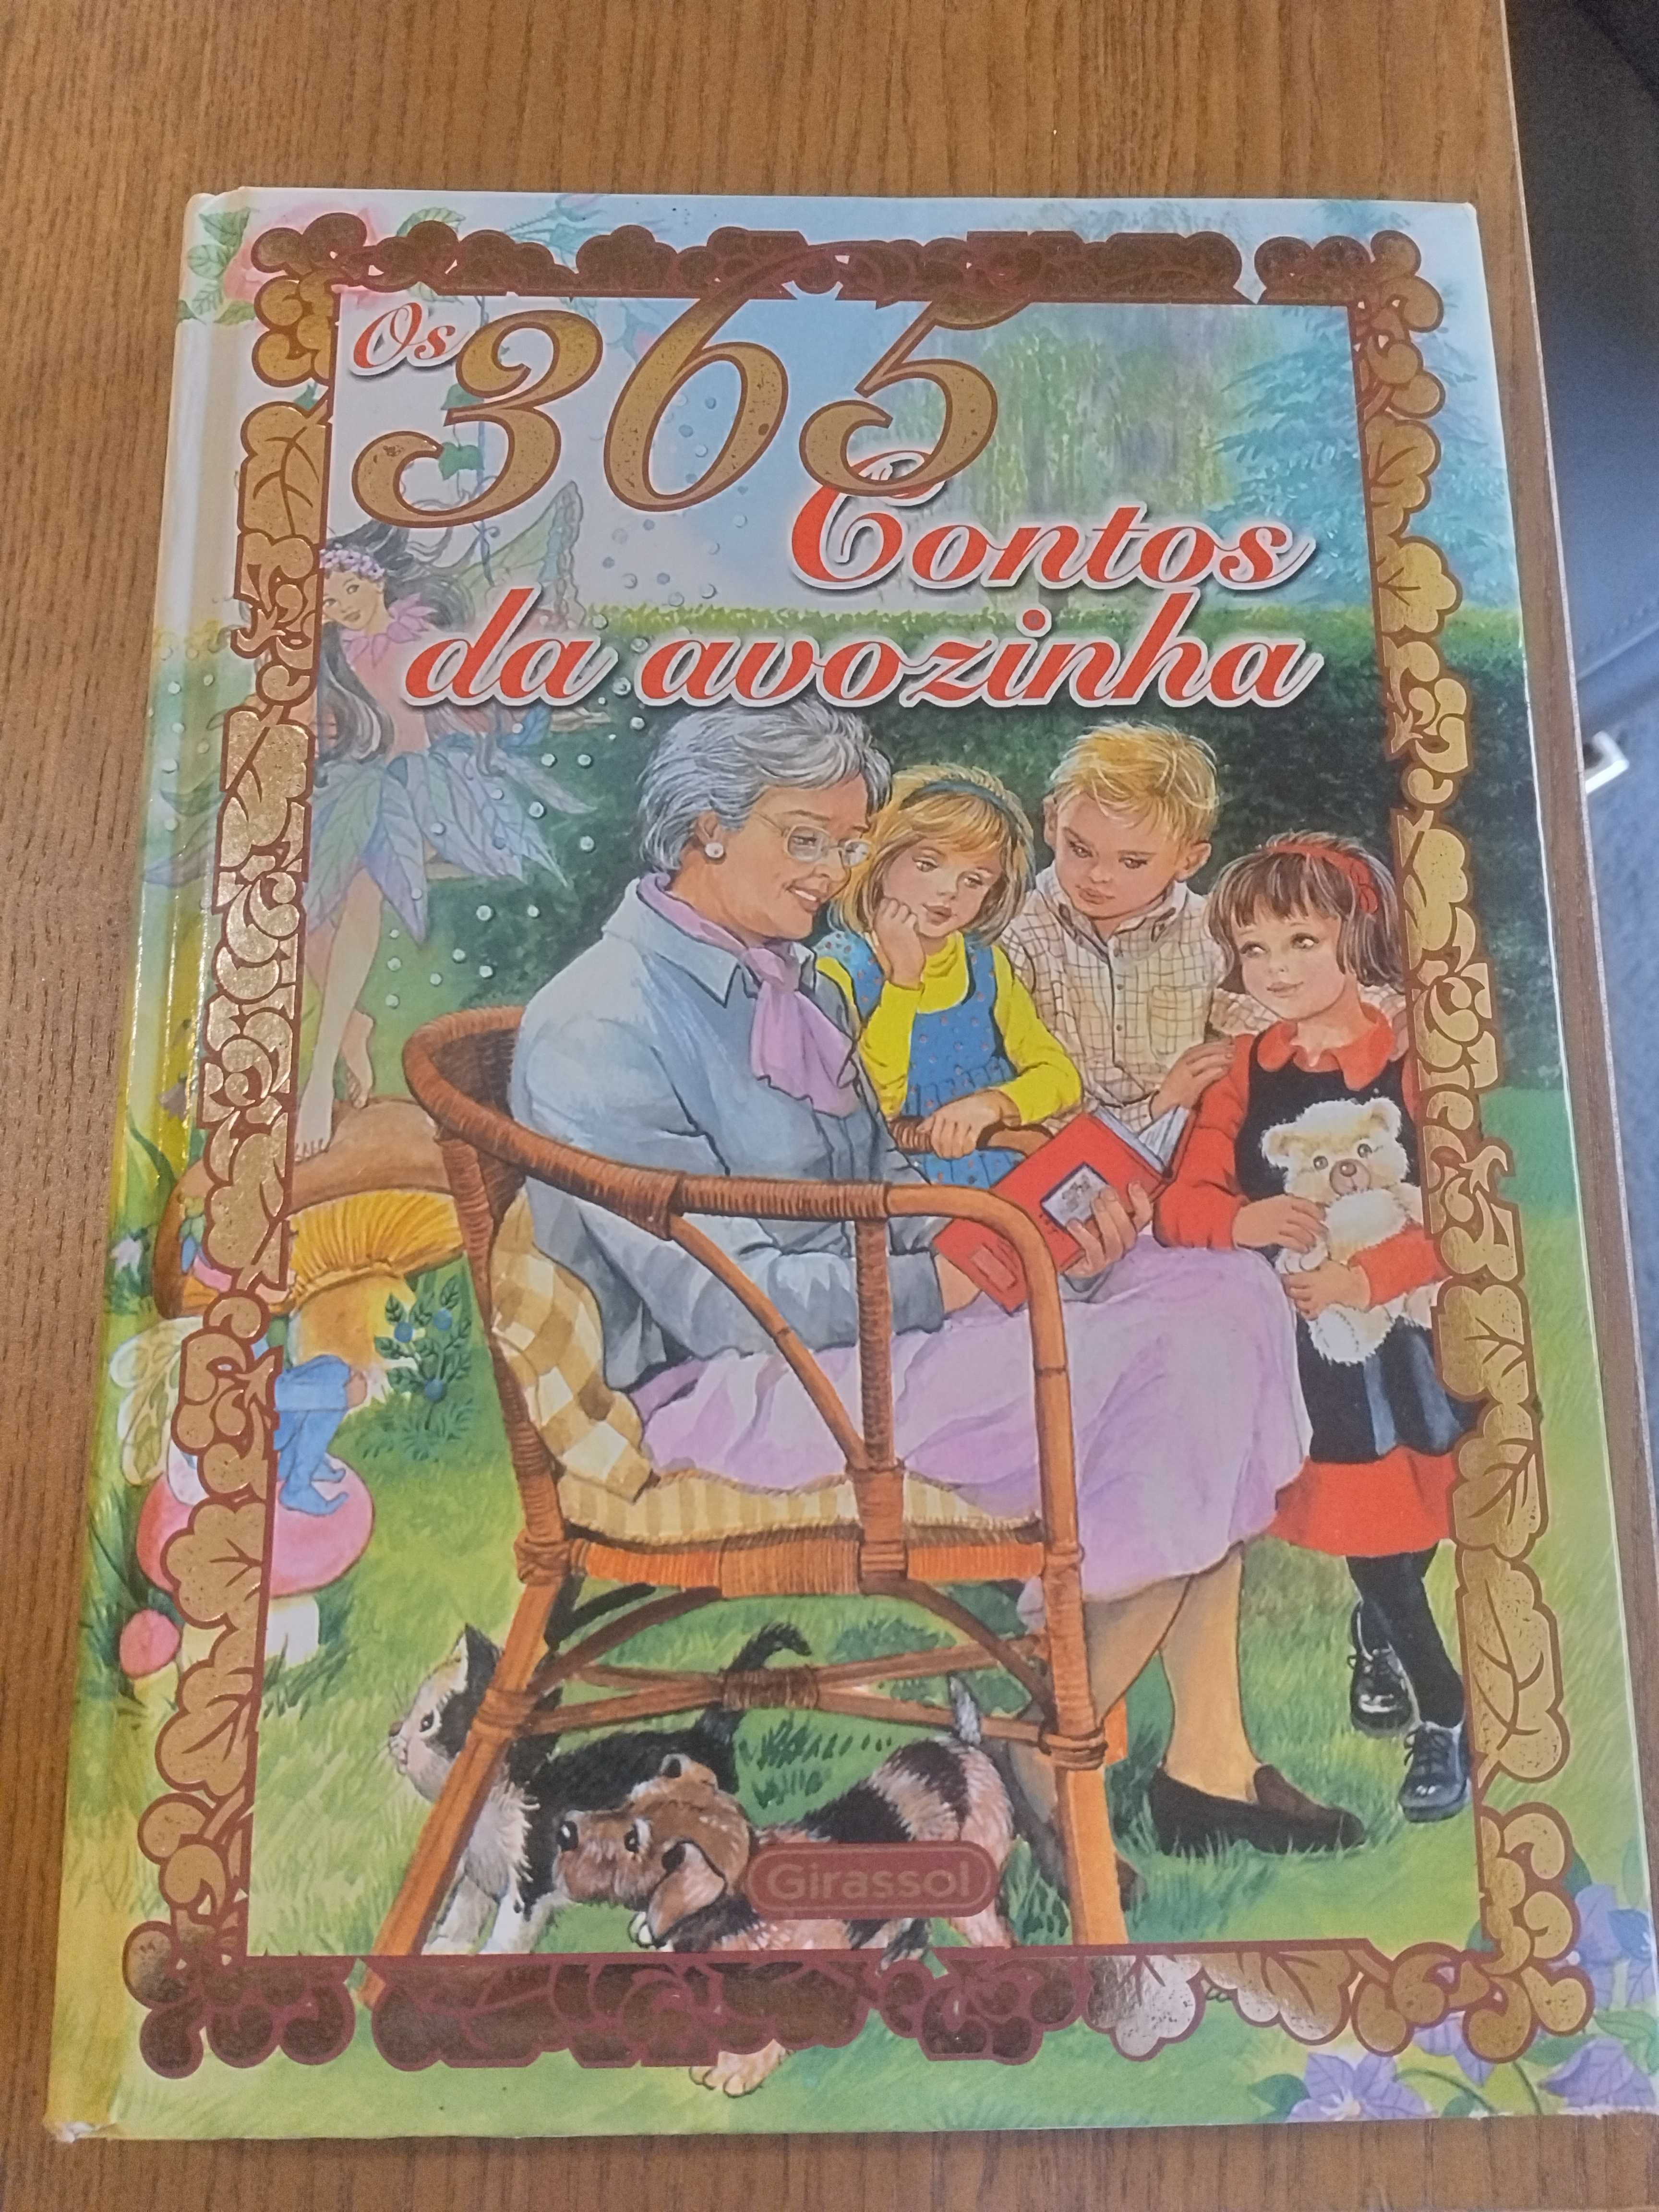 Livro  "365 Contos da avózinha" - 9€